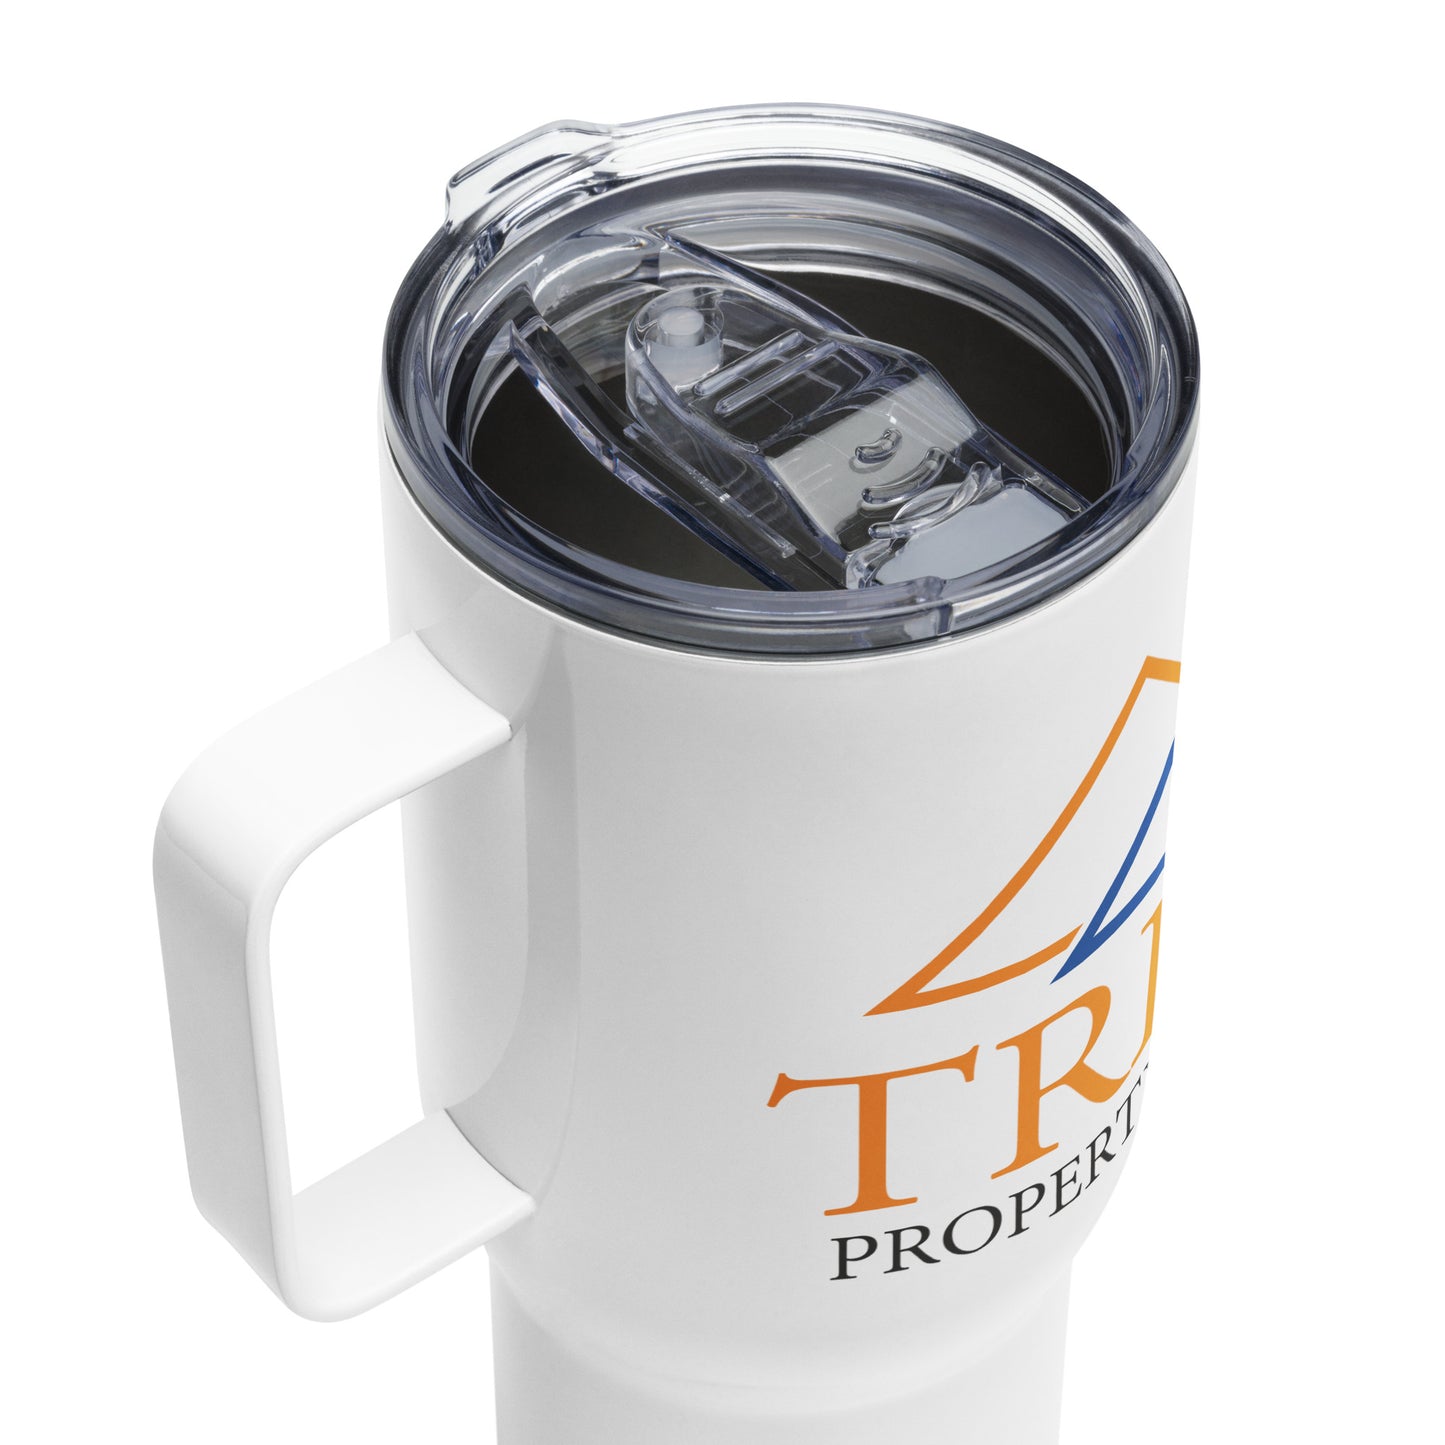 Tribond travel mug with a handle